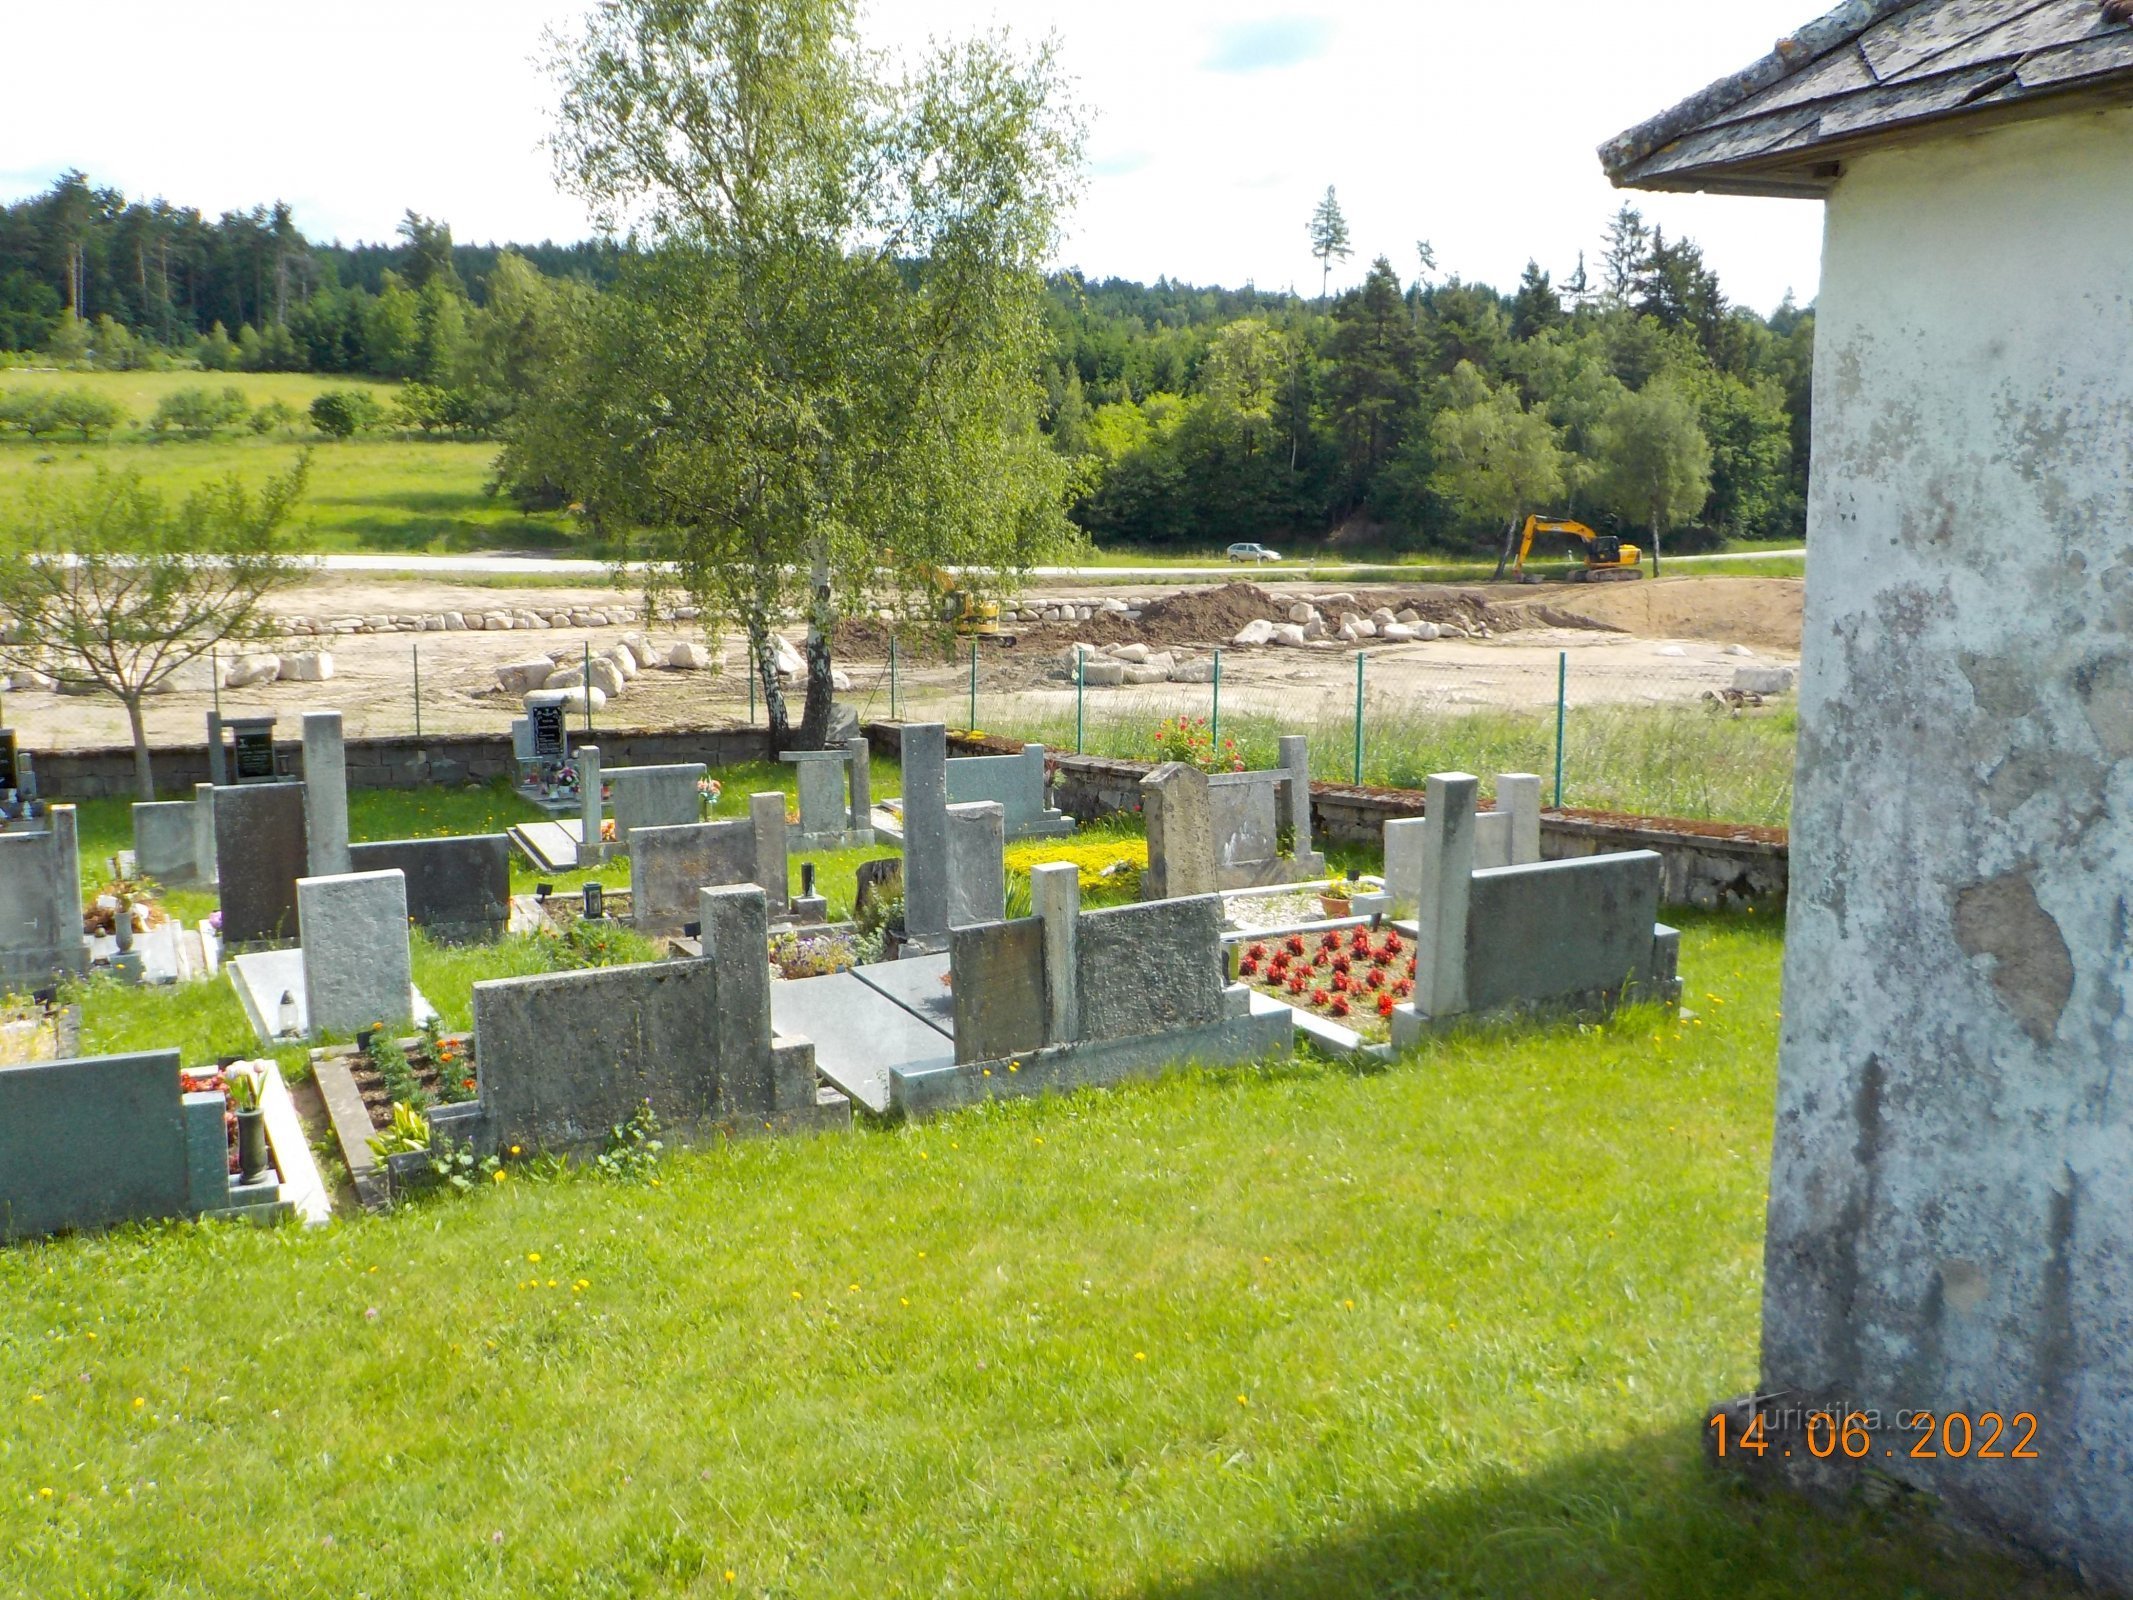 Construção de uma nova lagoa perto do cemitério.